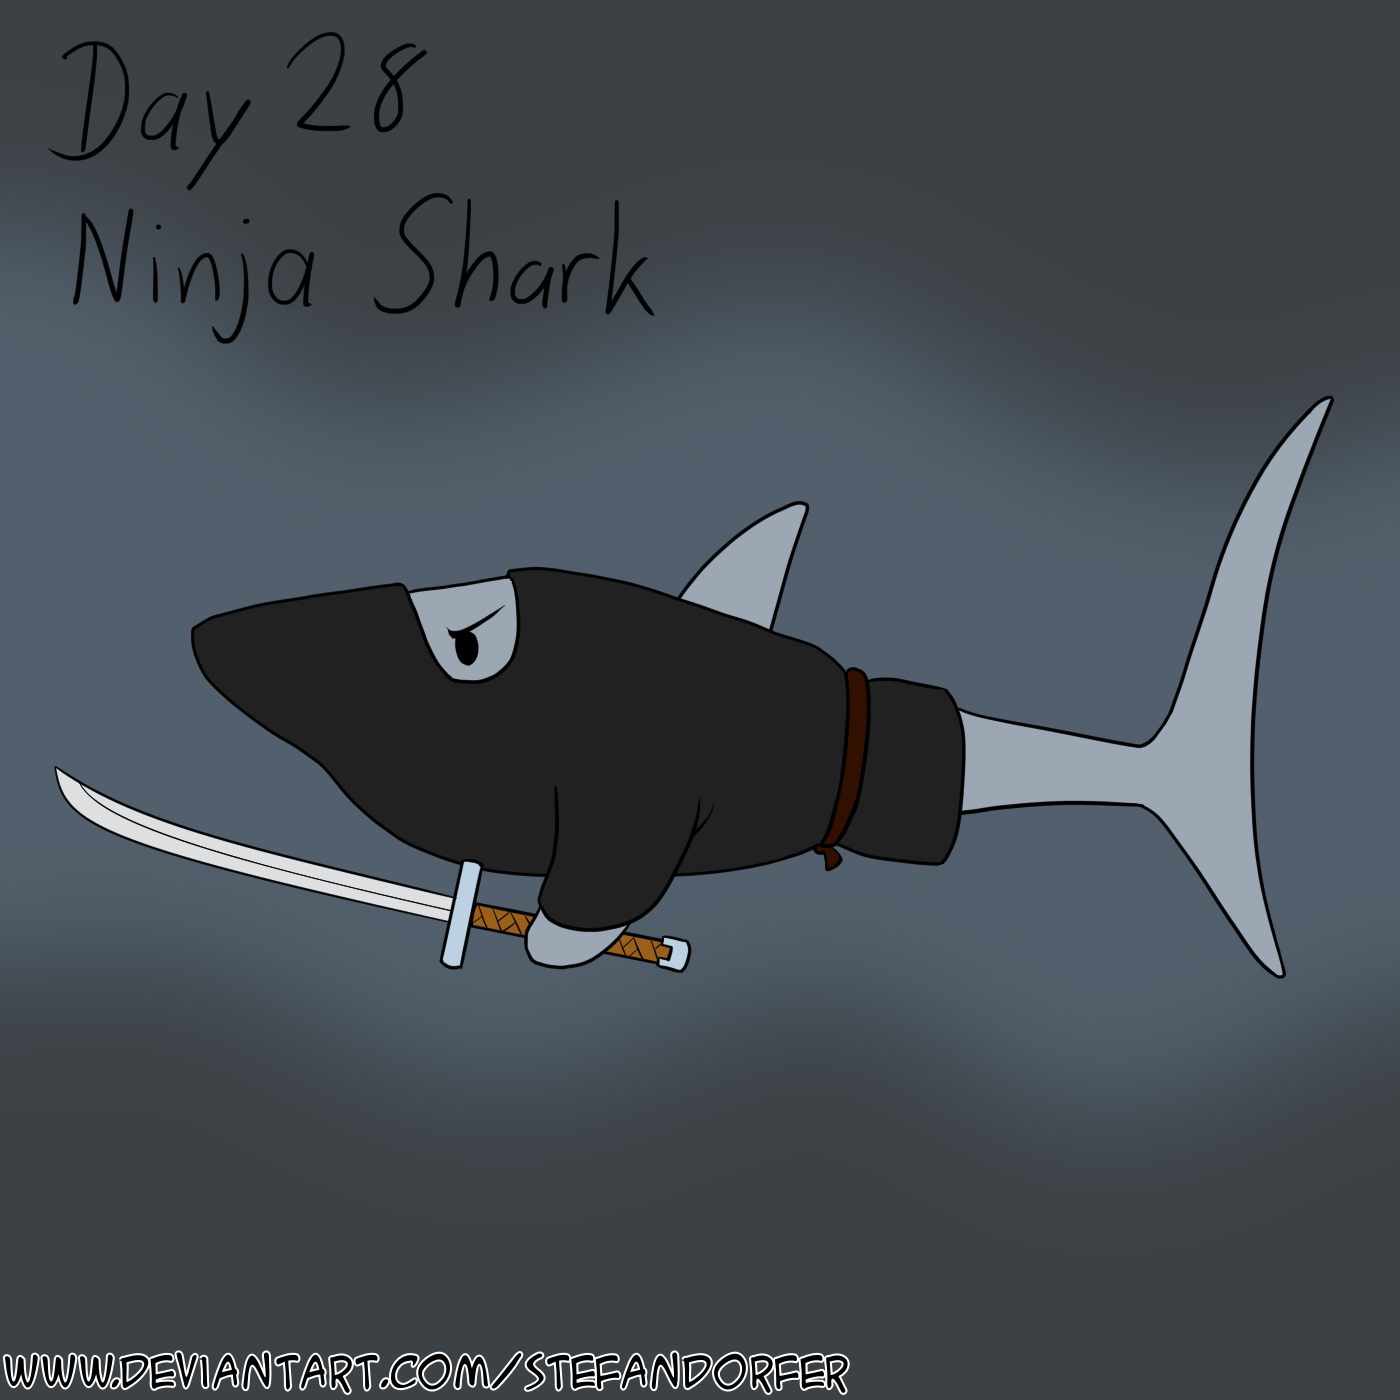 Sharktober 23 - 14 - Ninja Shark by Stefandorfer on DeviantArt